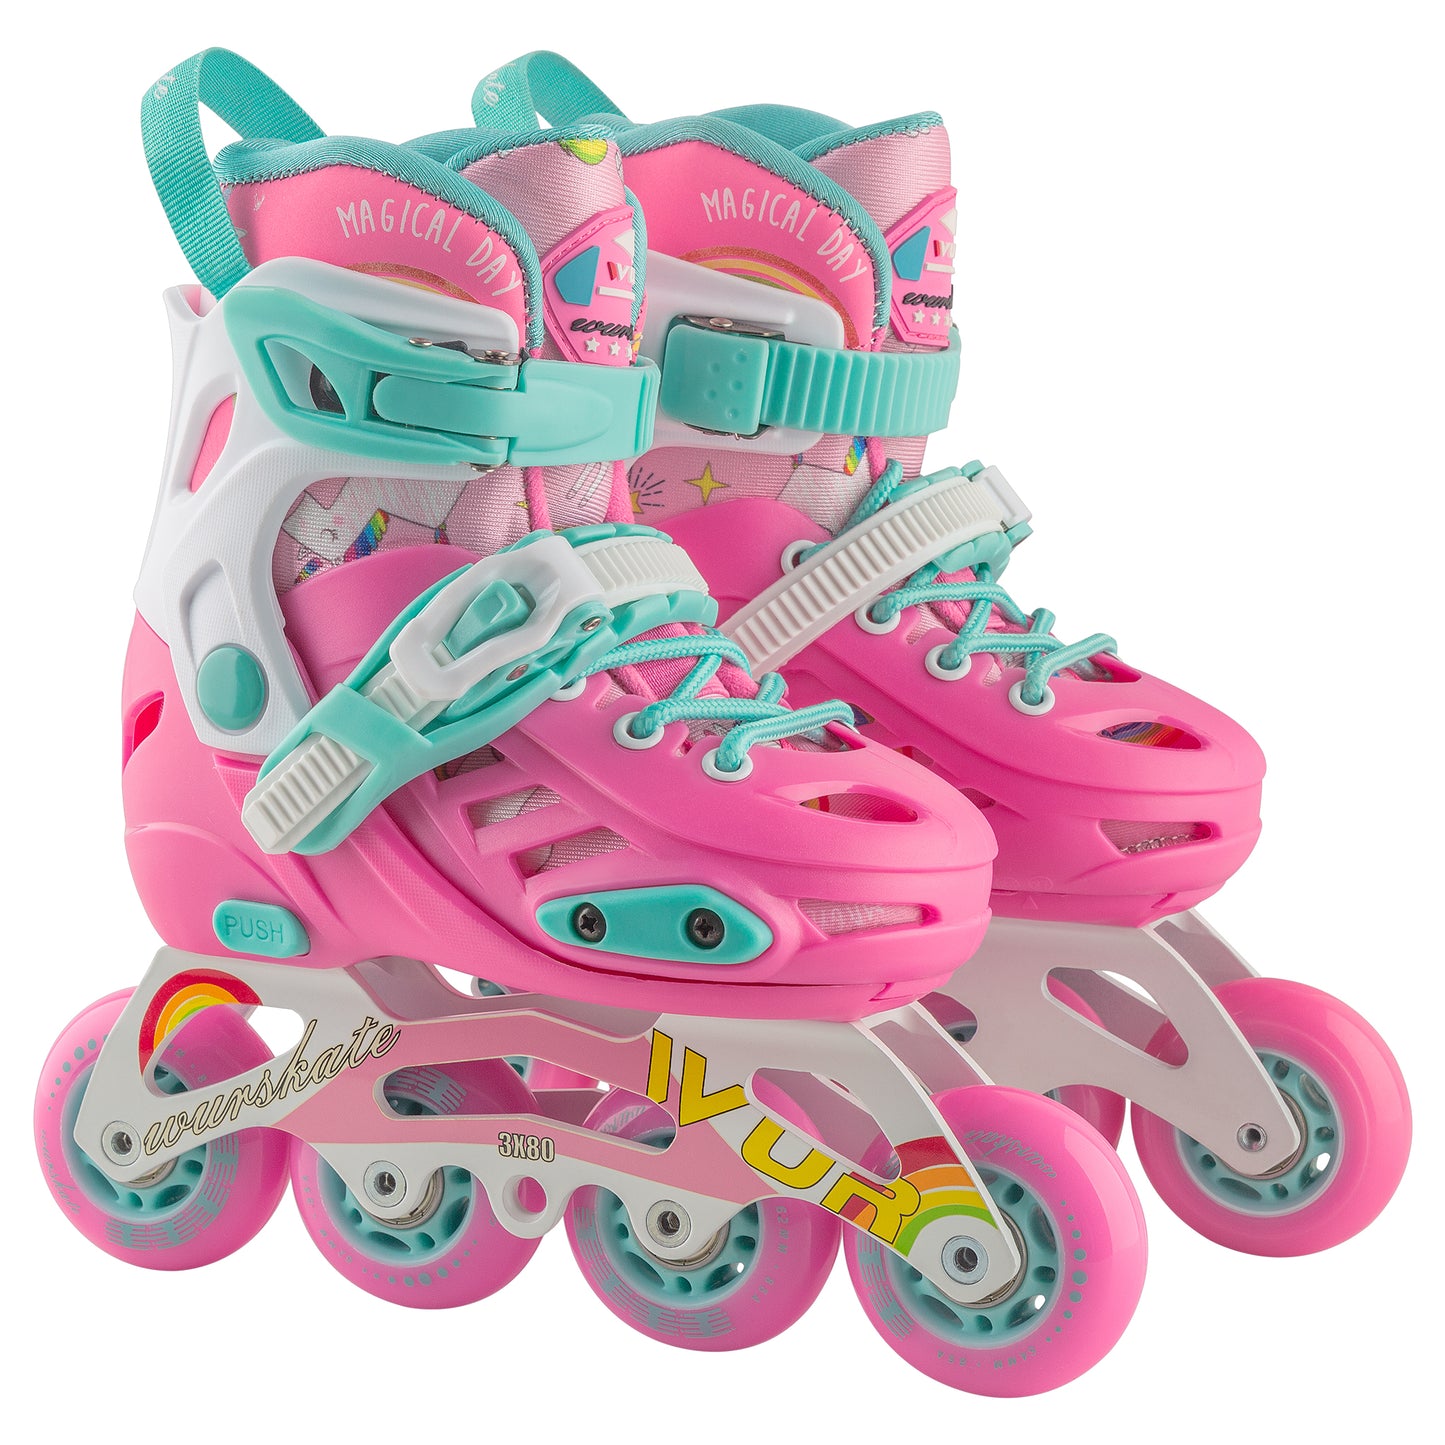 D102 Adjustable skate pink